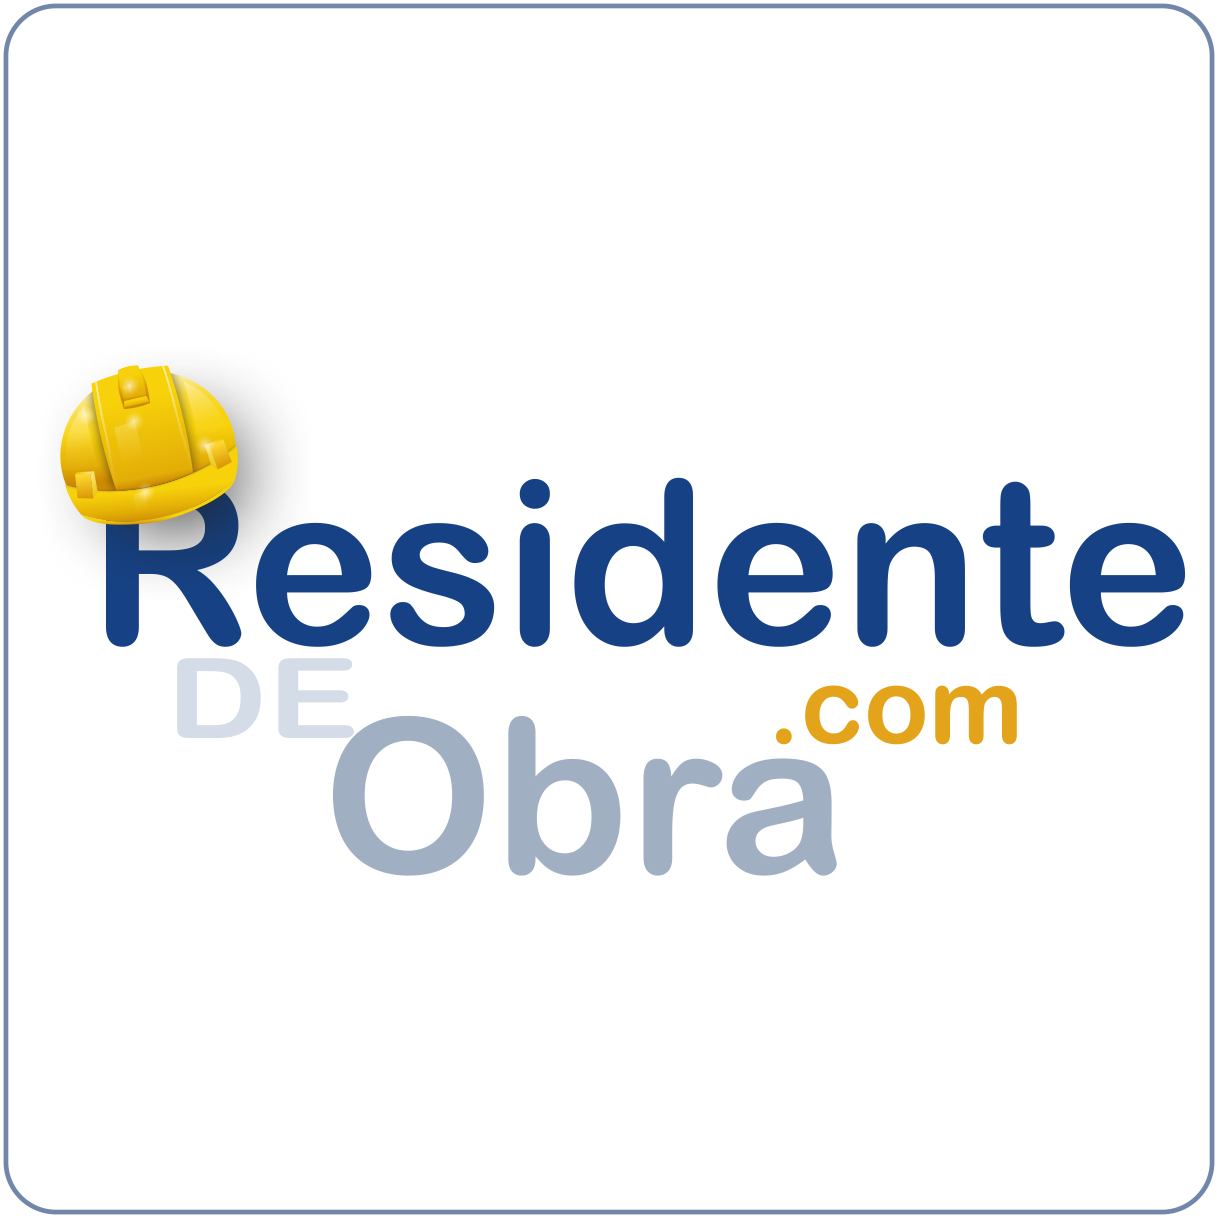 ResidenteDeObra.com